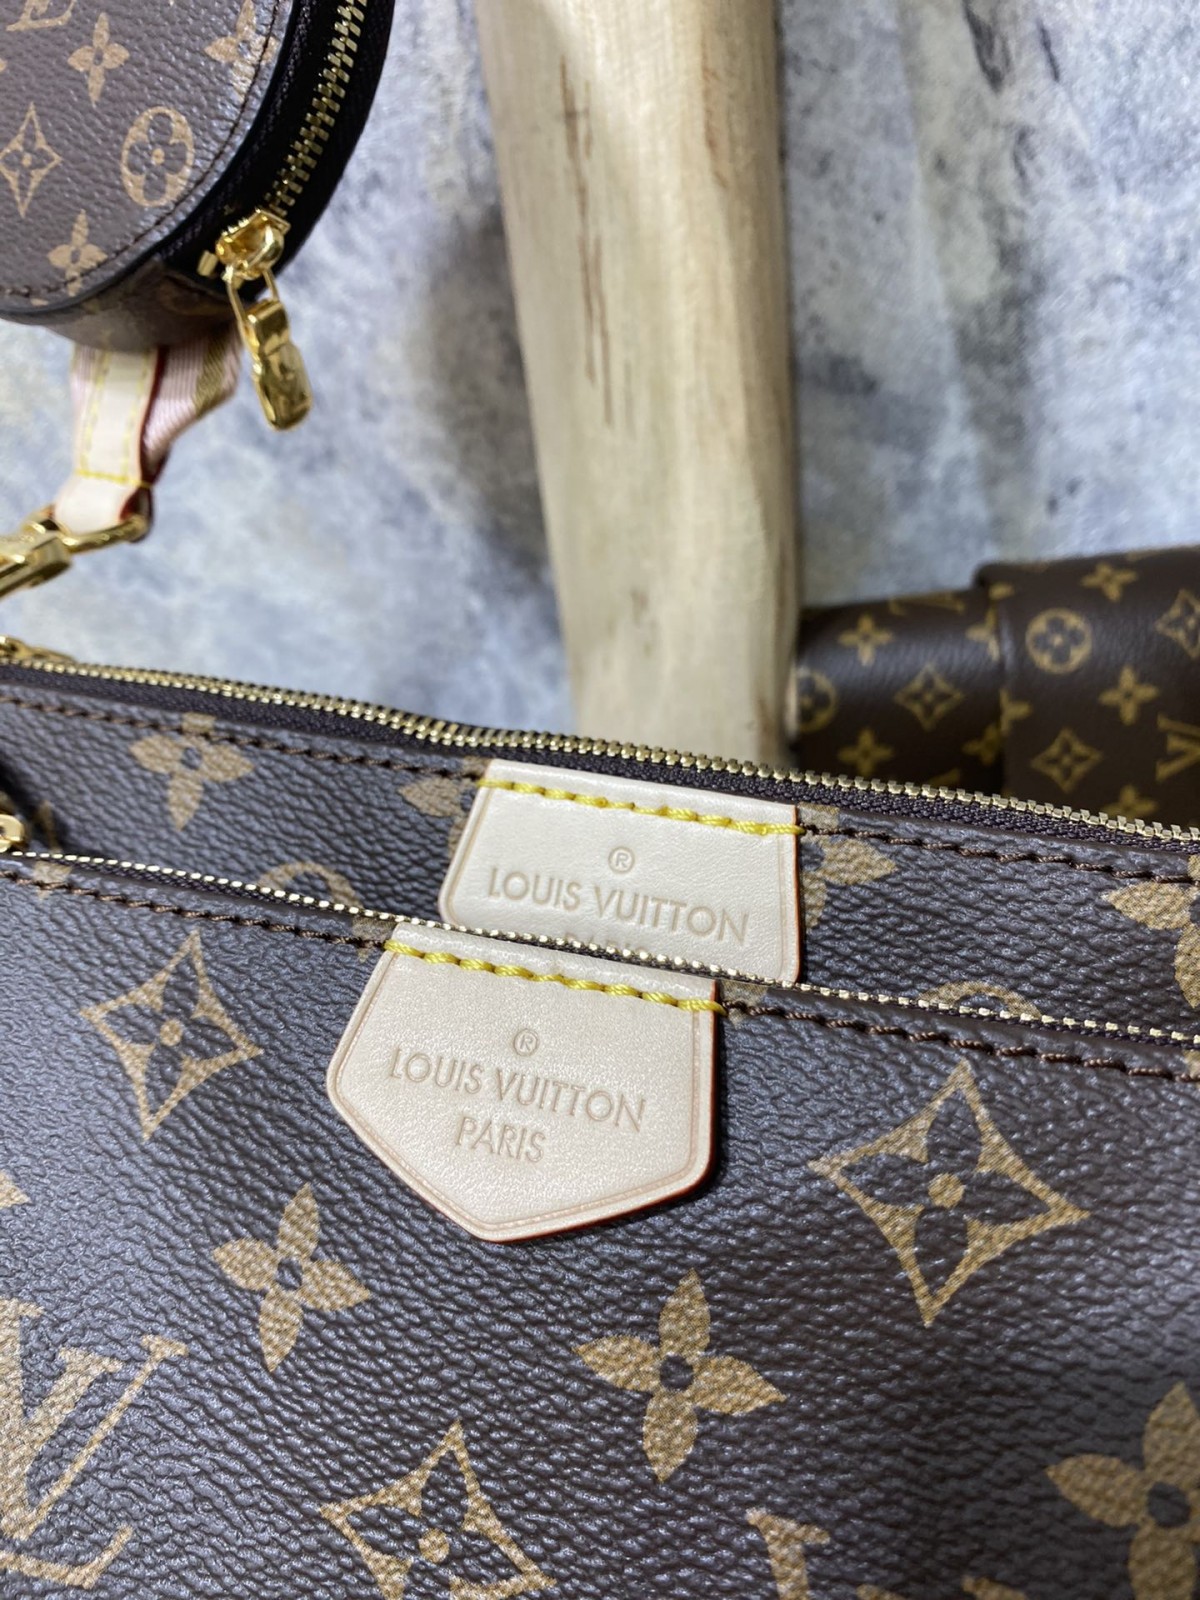 Kouman mwen ka achte Louis Vuitton bag bracelet replica online? (2022 dènye)-Best Quality Fake Louis Vuitton Bag Online Store, Replica designer bag ru